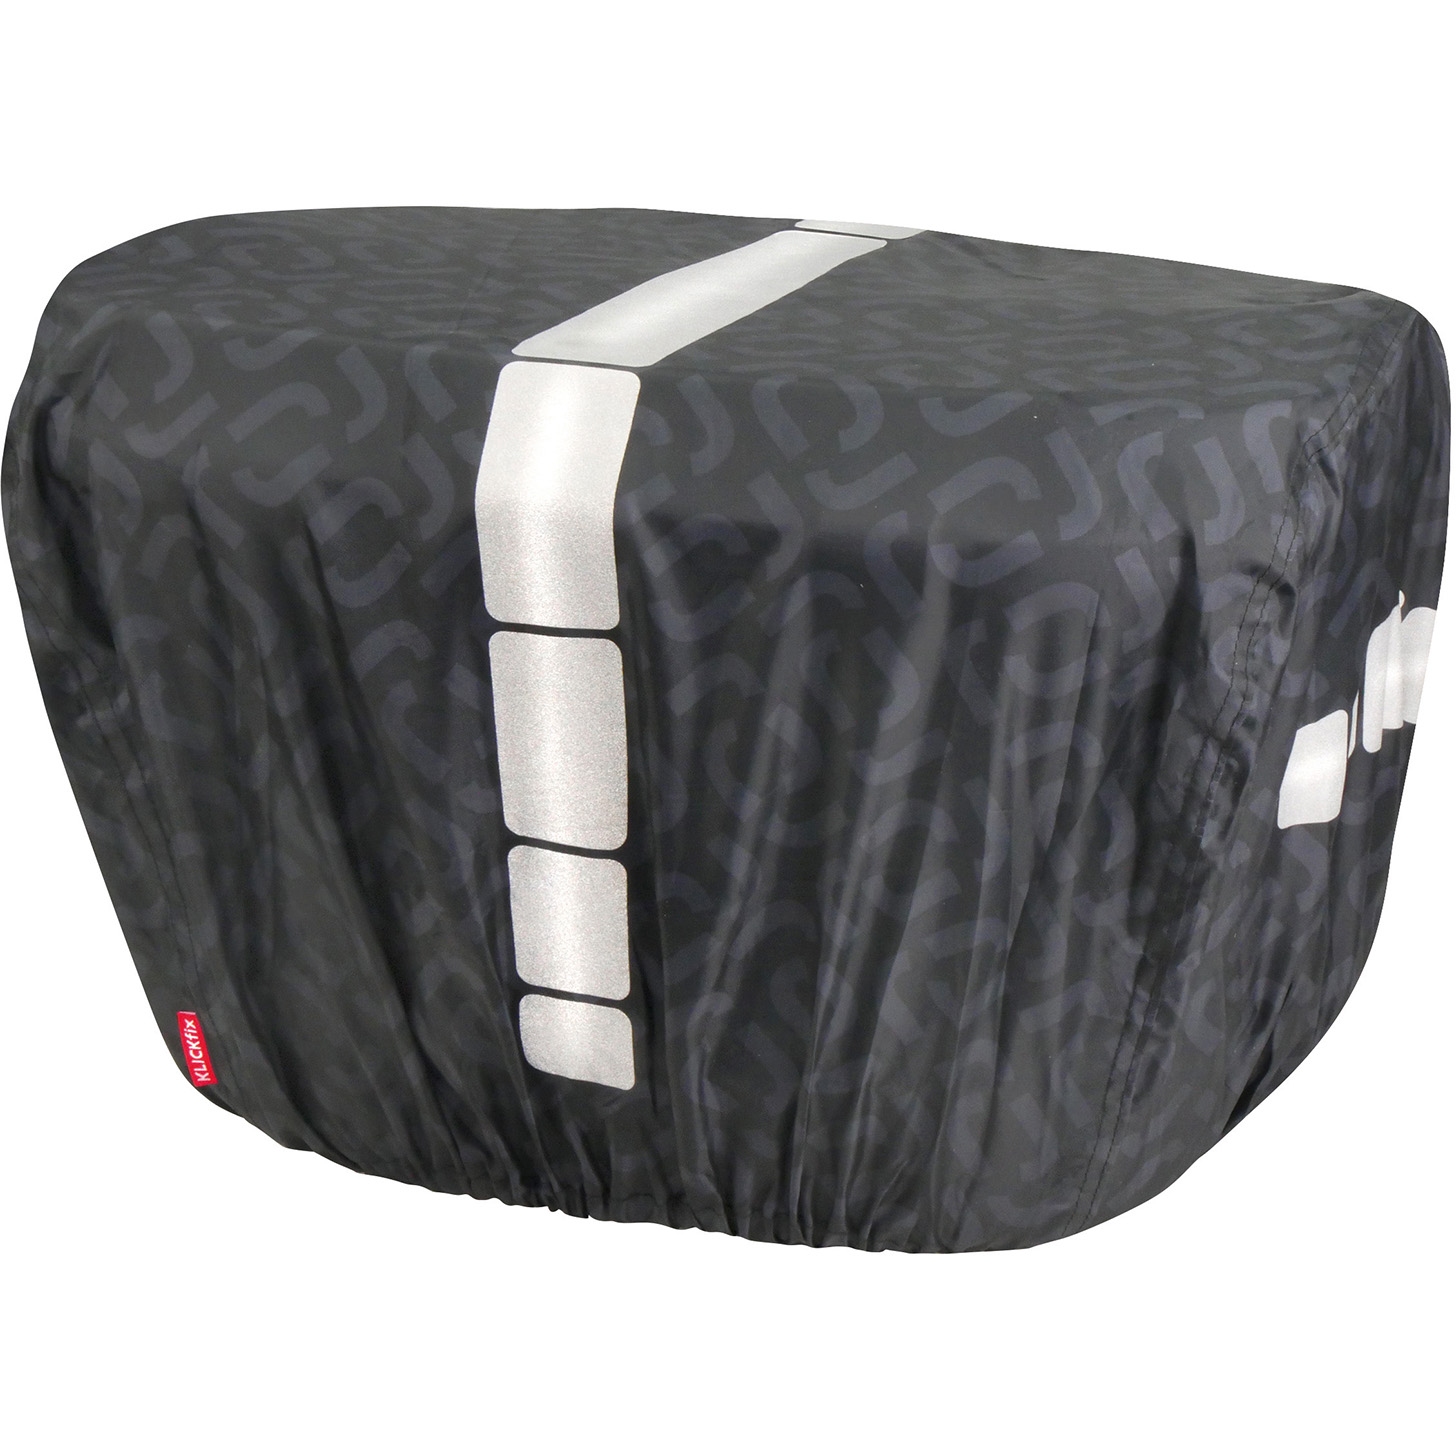 Produktbild von KLICKfix Regenhülle XL für Reisenthel Gepäckträgerkörbe - schwarz